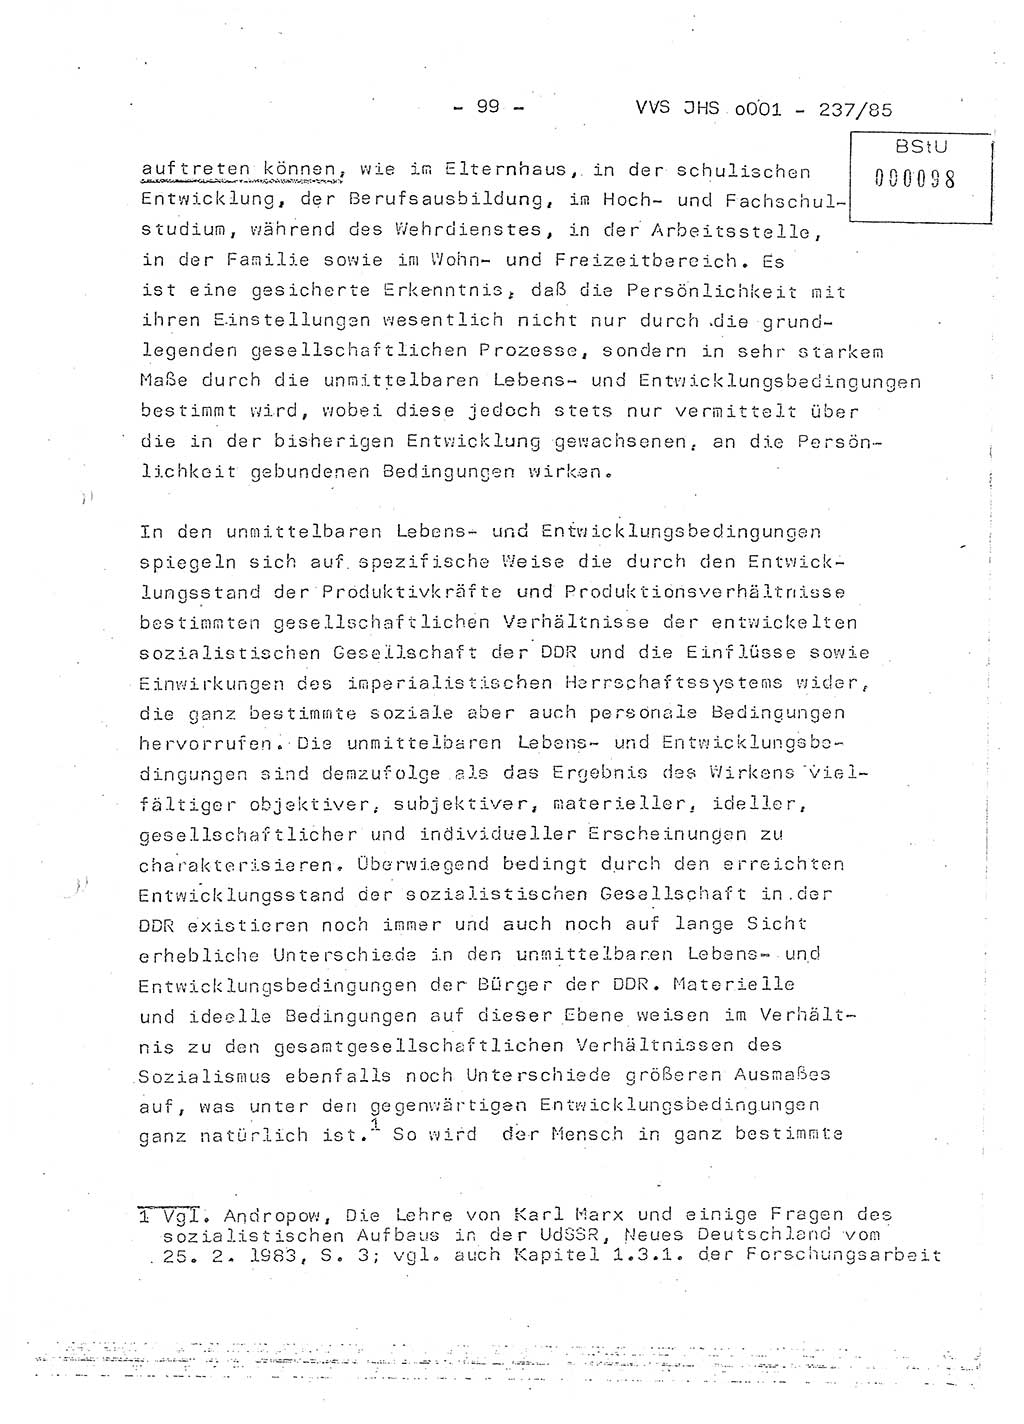 Dissertation Oberstleutnant Peter Jakulski (JHS), Oberstleutnat Christian Rudolph (HA Ⅸ), Major Horst Böttger (ZMD), Major Wolfgang Grüneberg (JHS), Major Albert Meutsch (JHS), Ministerium für Staatssicherheit (MfS) [Deutsche Demokratische Republik (DDR)], Juristische Hochschule (JHS), Vertrauliche Verschlußsache (VVS) o001-237/85, Potsdam 1985, Seite 99 (Diss. MfS DDR JHS VVS o001-237/85 1985, S. 99)